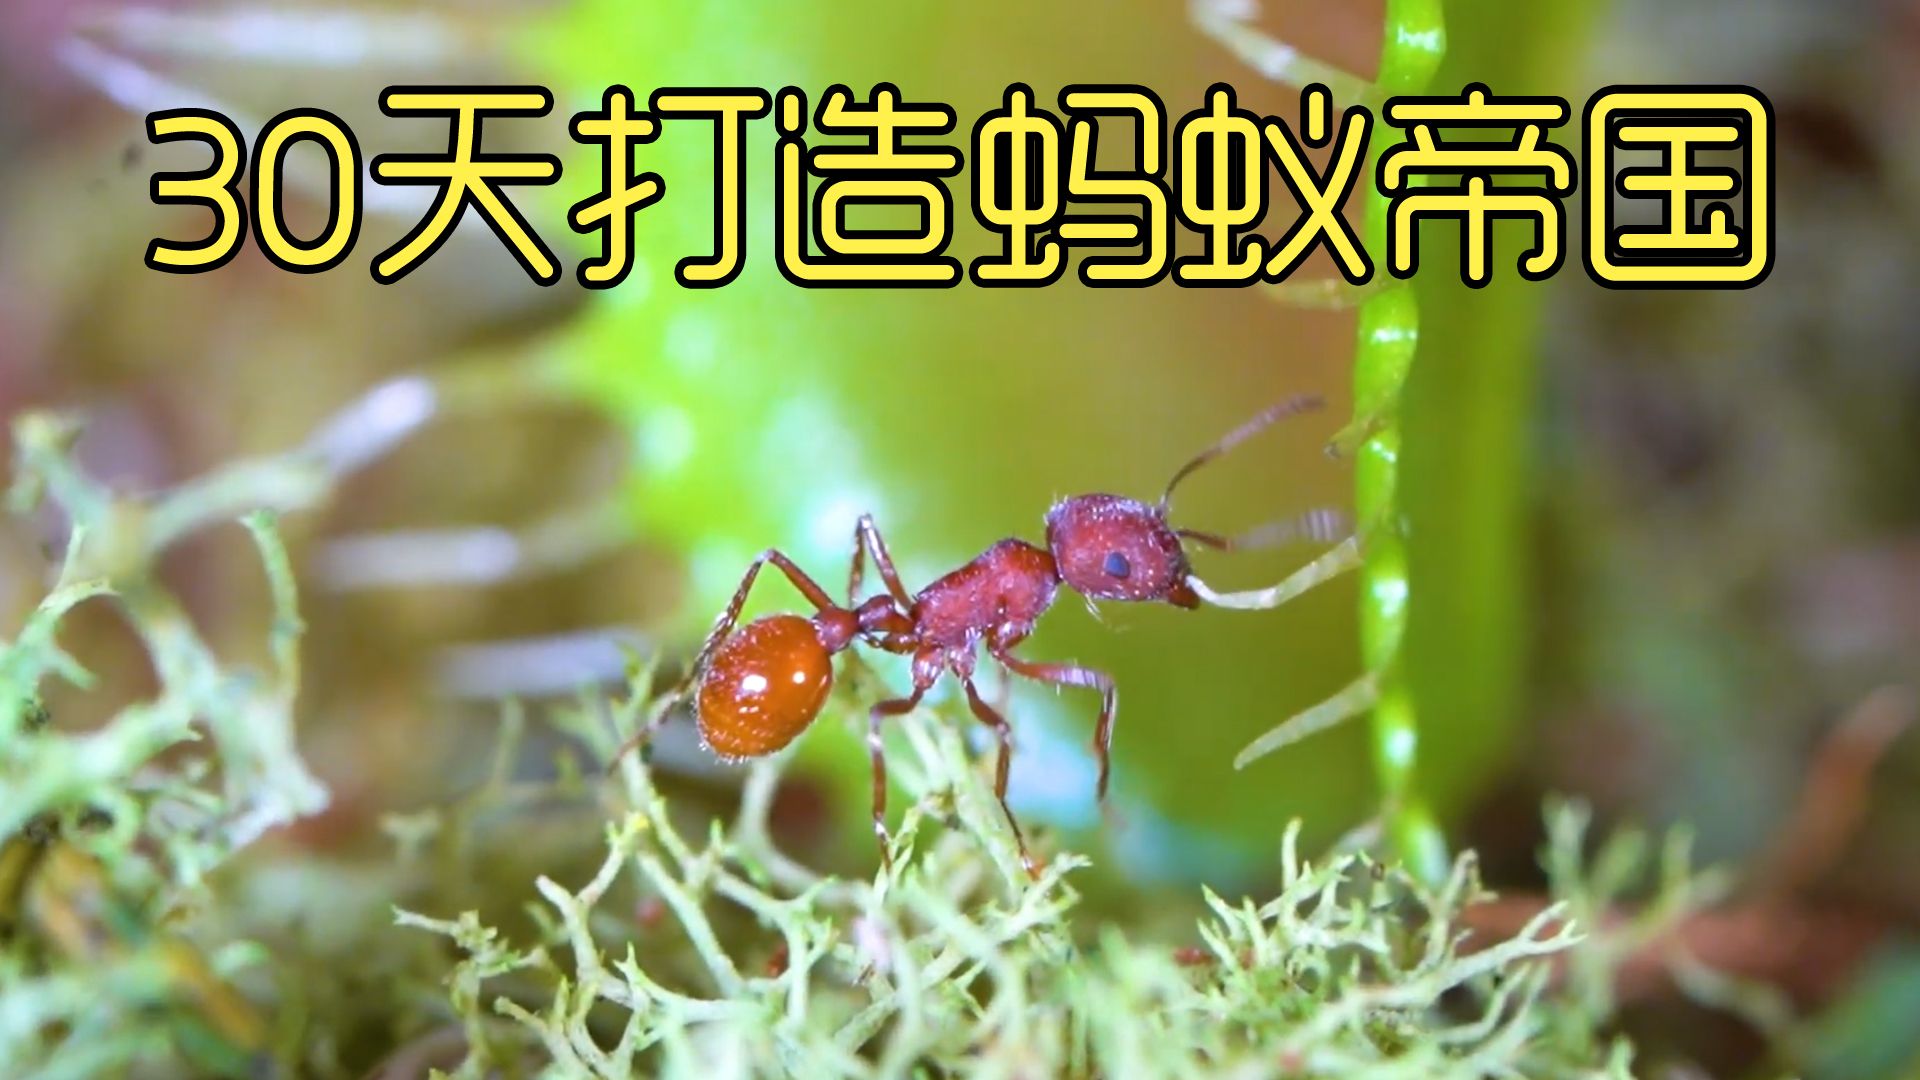 沉浸式养蚂蚁，历经30天打造蚂蚁沙漠雨林生态，超有趣超好玩